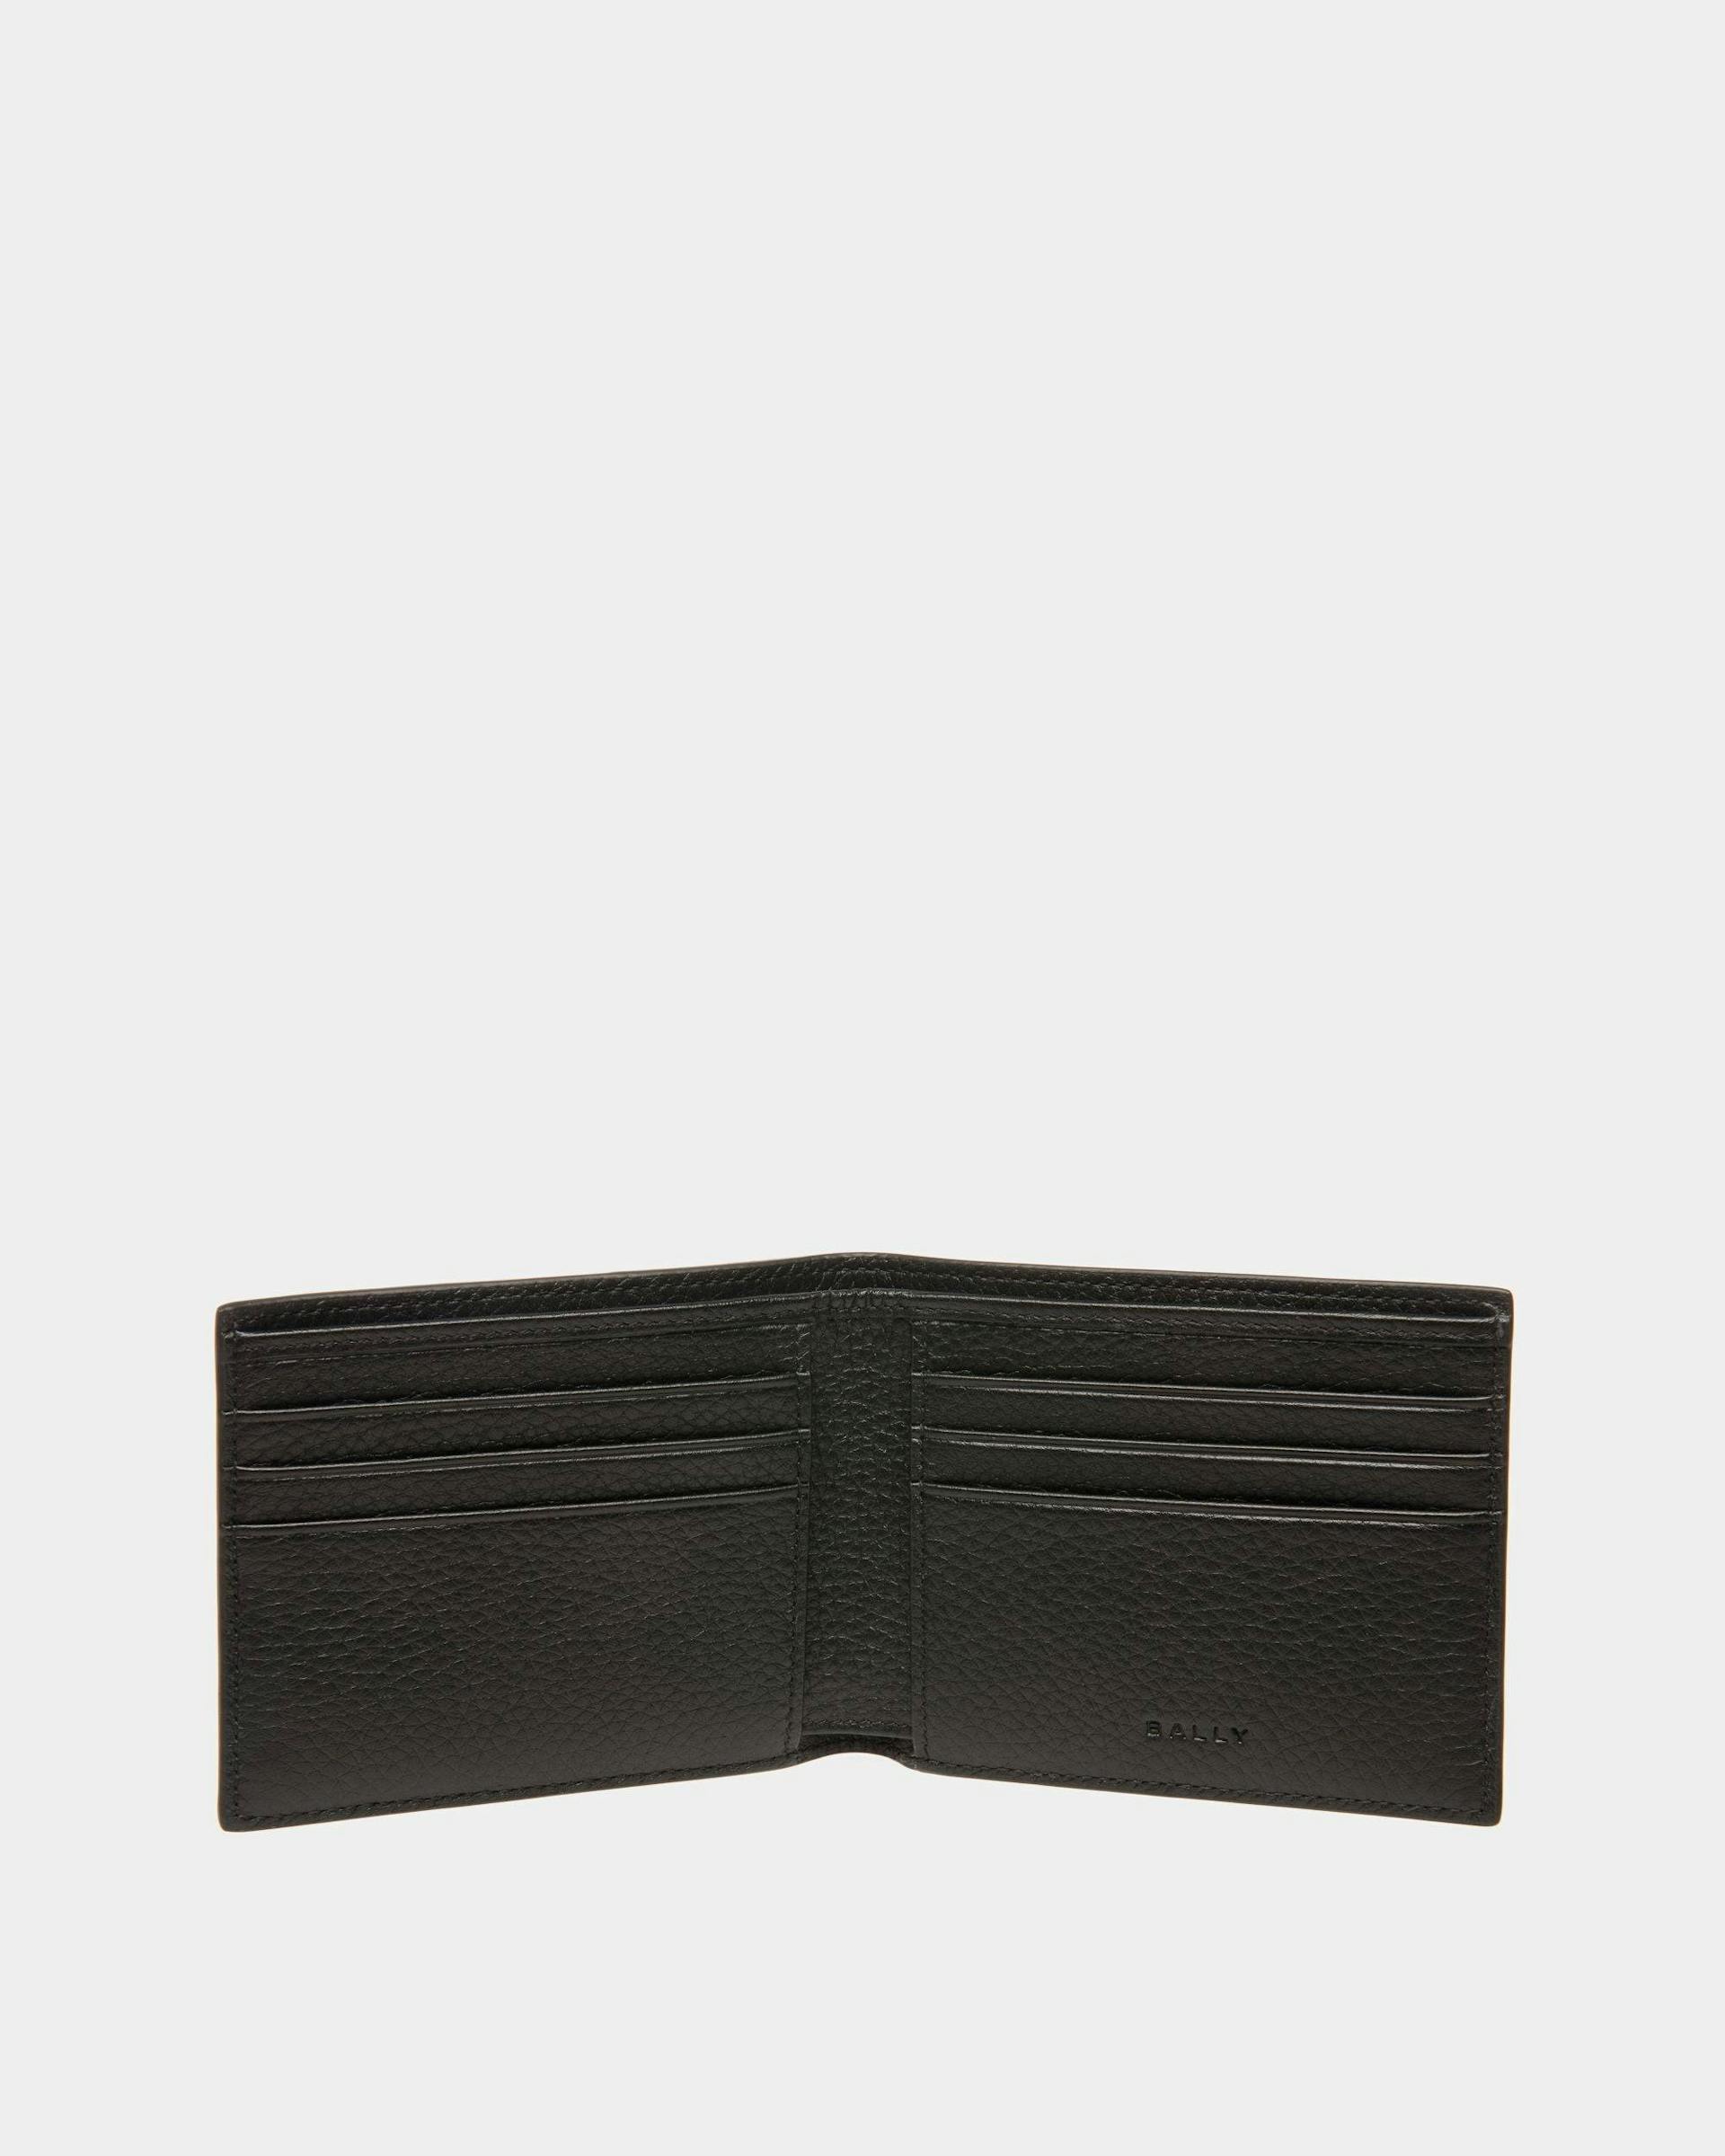 Men's Ribbon Wallet In Black Leather | Bally | Still Life Open / Inside